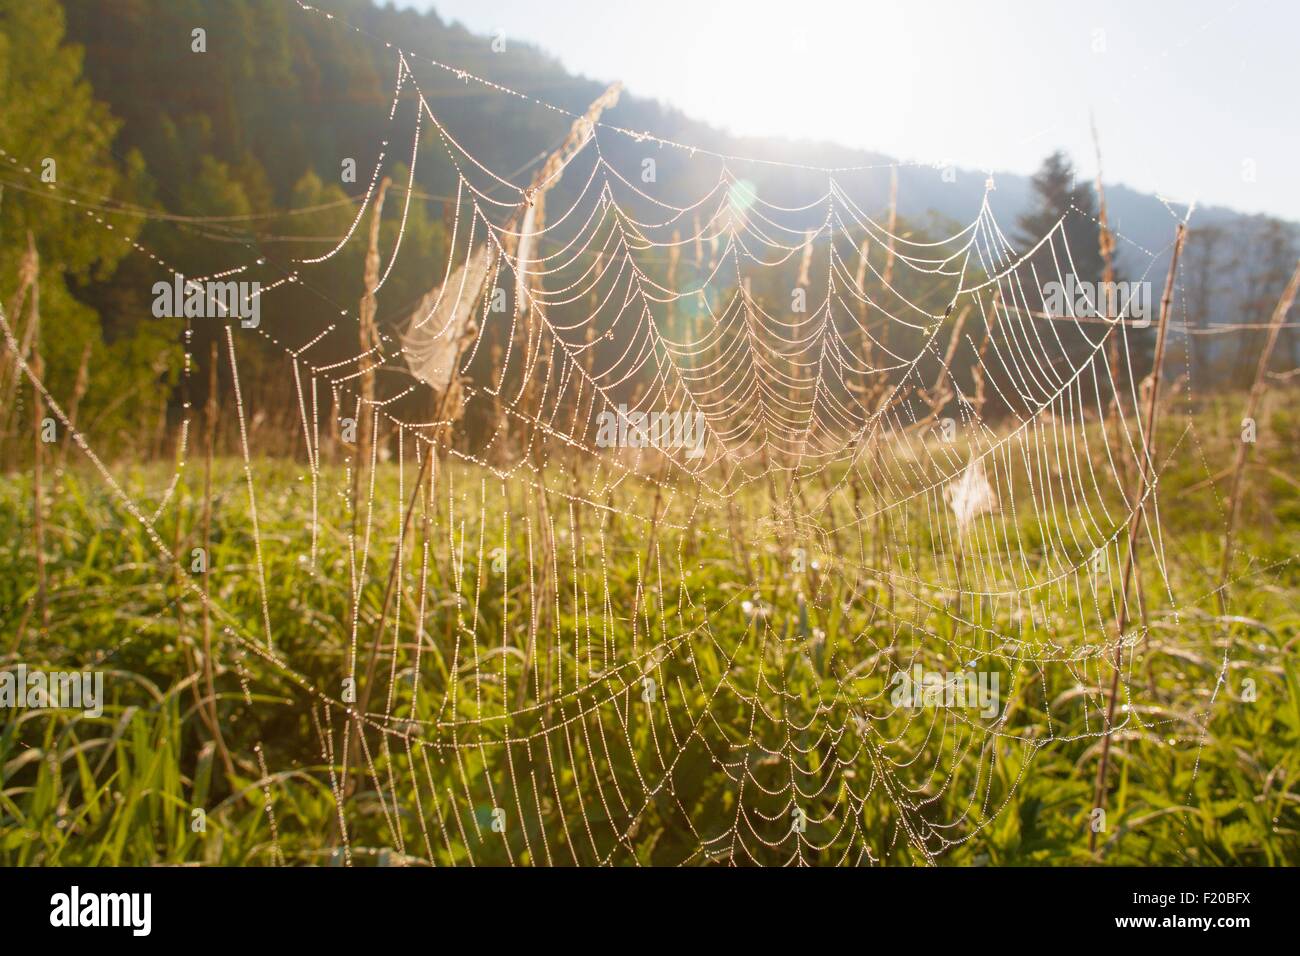 Spider's Web dans le champ, close-up Banque D'Images